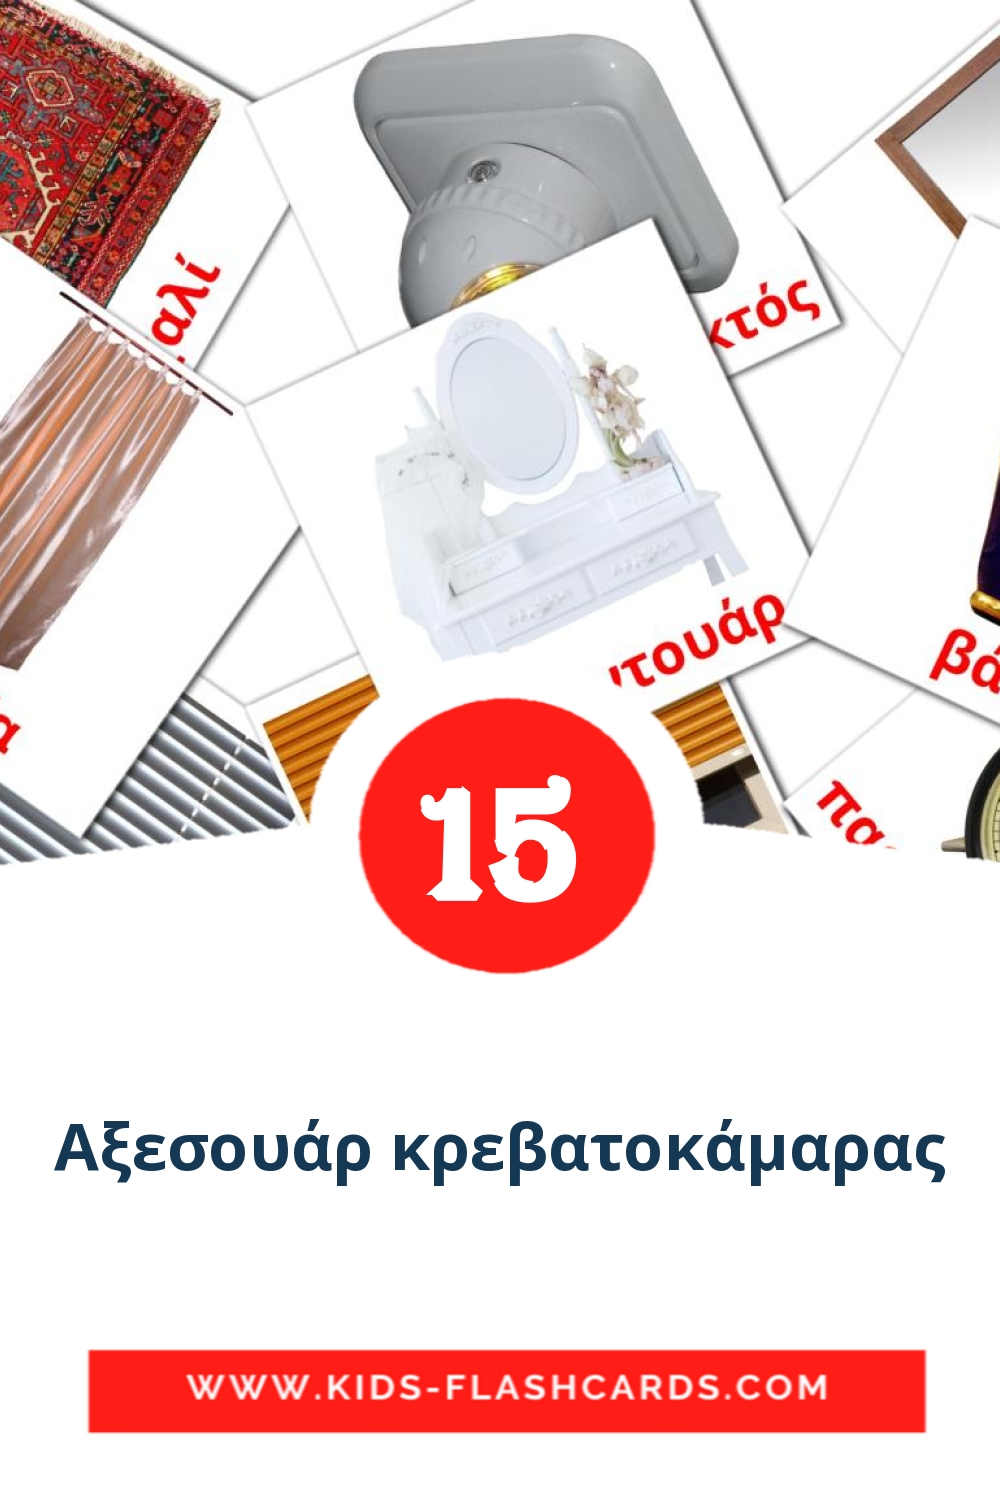 15 Cartões com Imagens de Αξεσουάρ κρεβατοκάμαρας para Jardim de Infância em grego